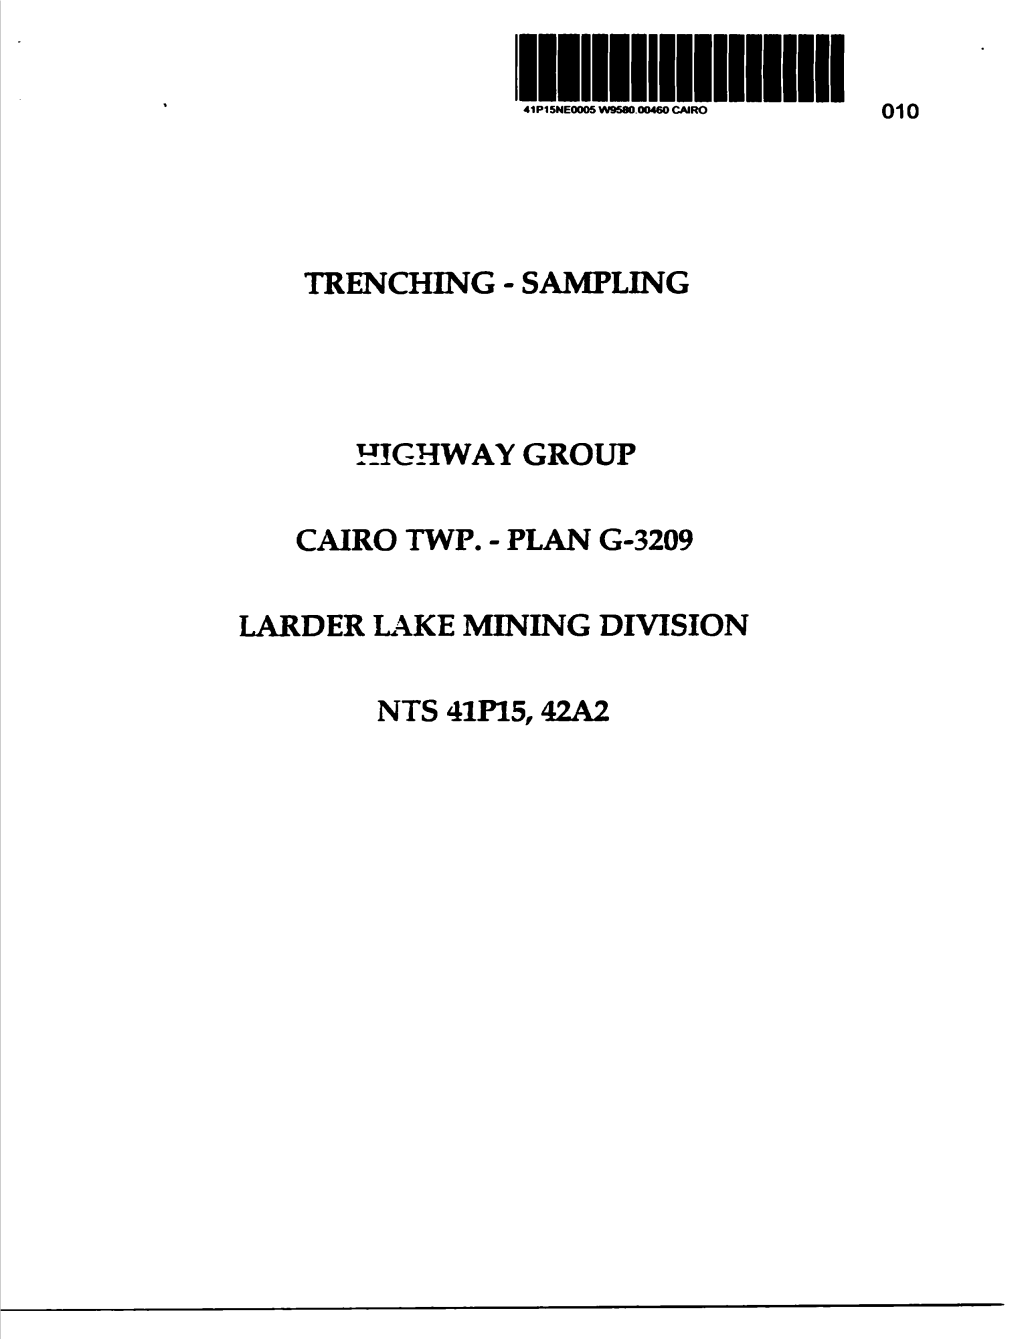 Trenching - Sampling